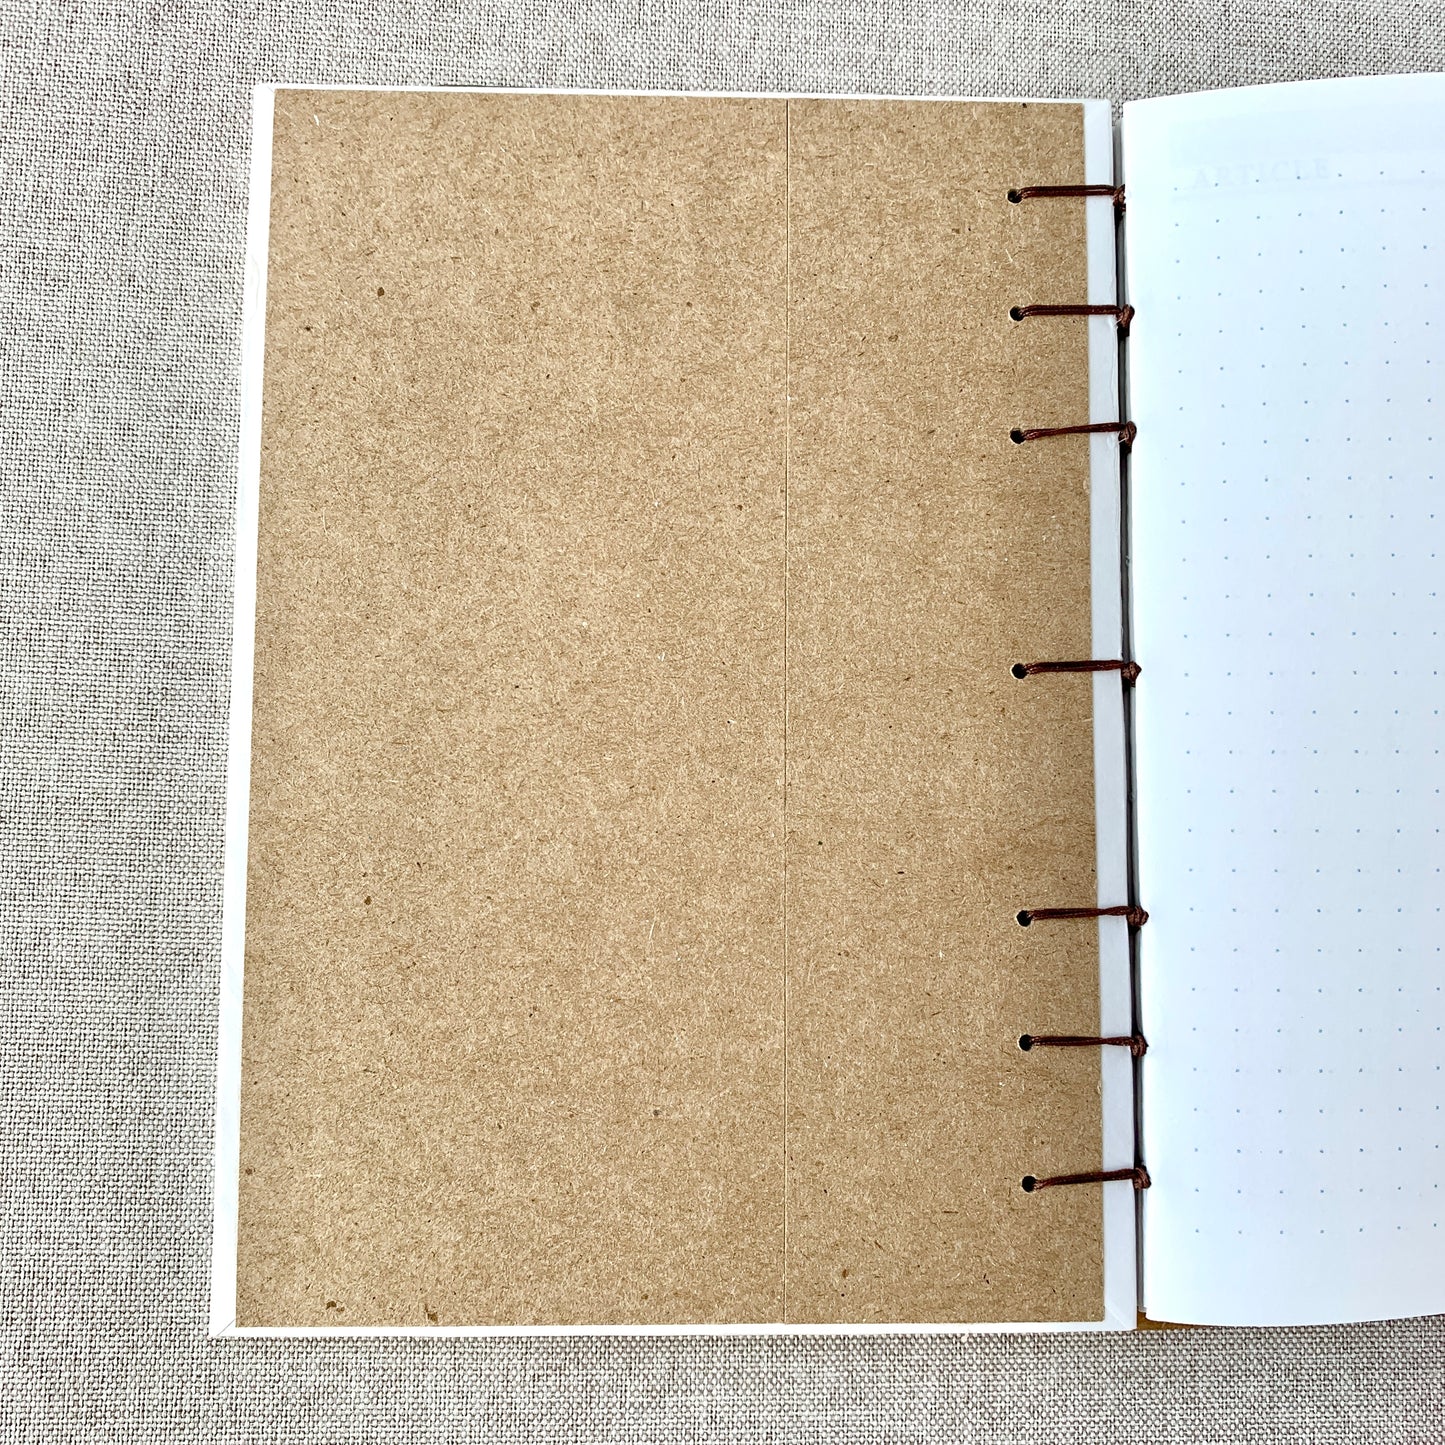 Thrift - A6 - Dot Grid - Coptic Bound - Fountain Pen Notebook - Handmade Journal